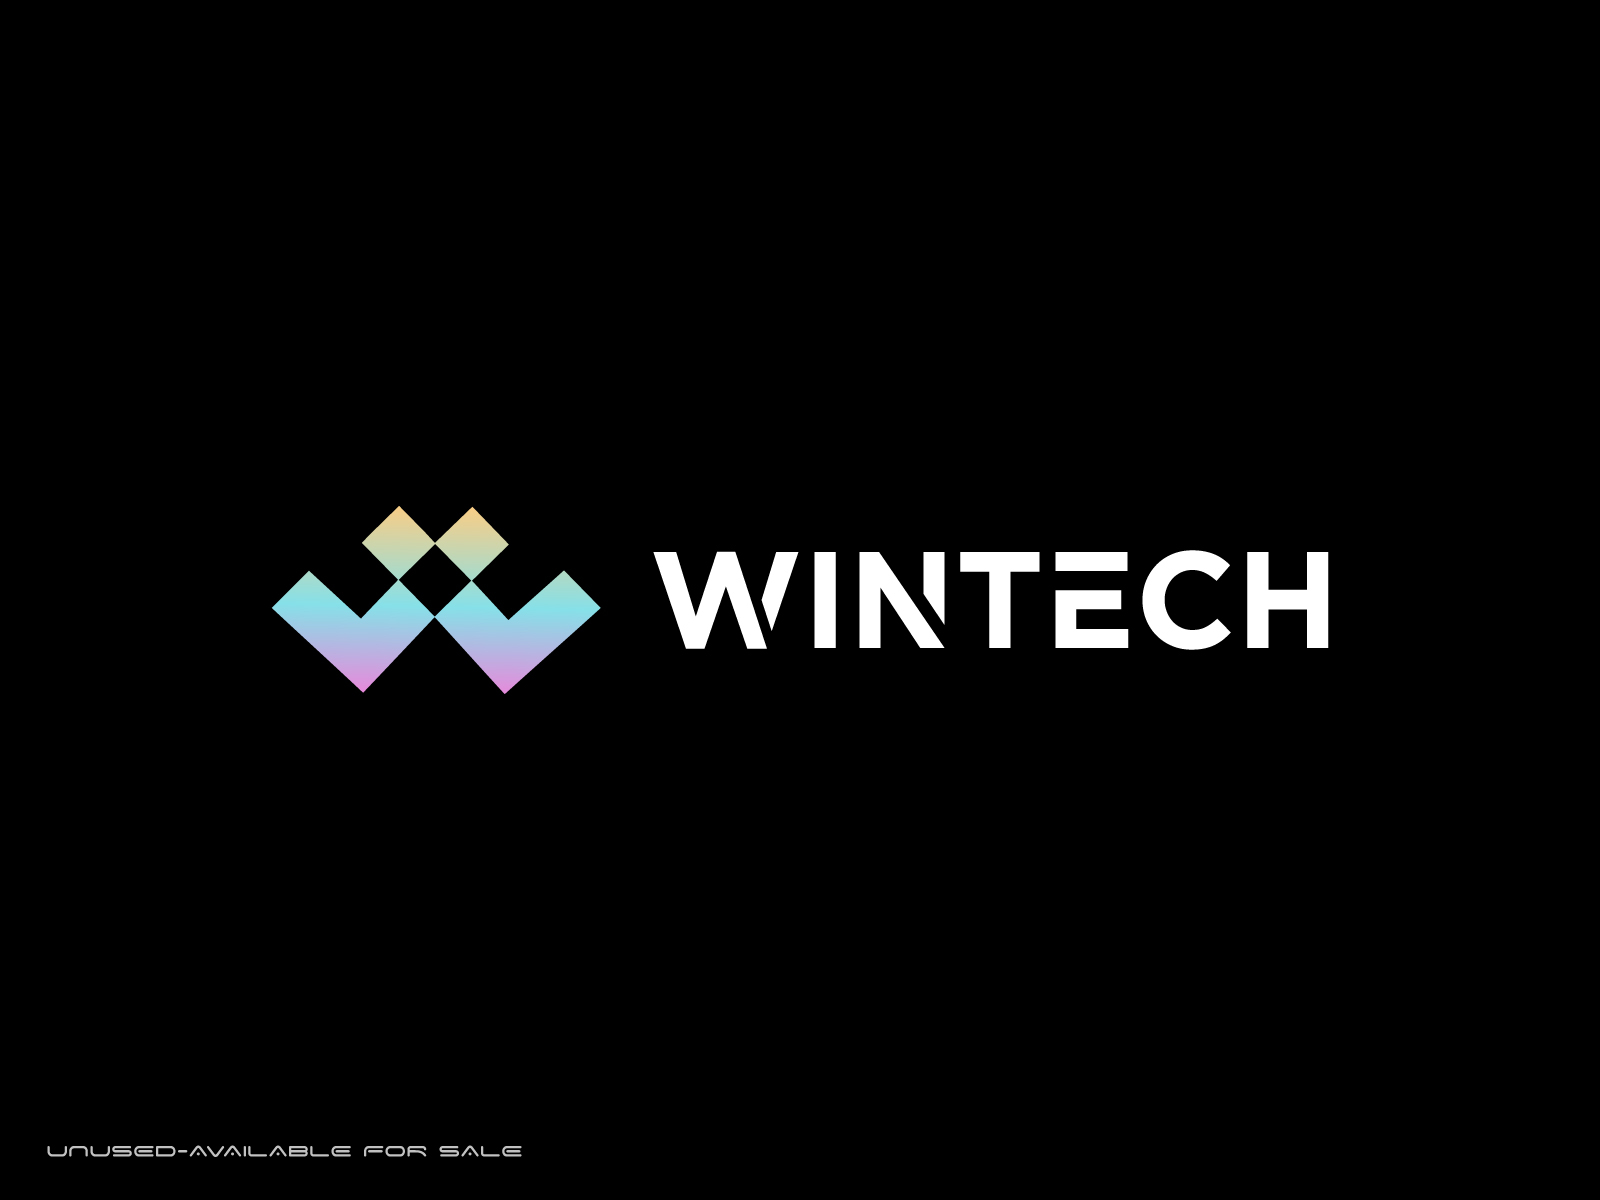 Wintech logo, techy logo by Majarul Islam on Dribbble